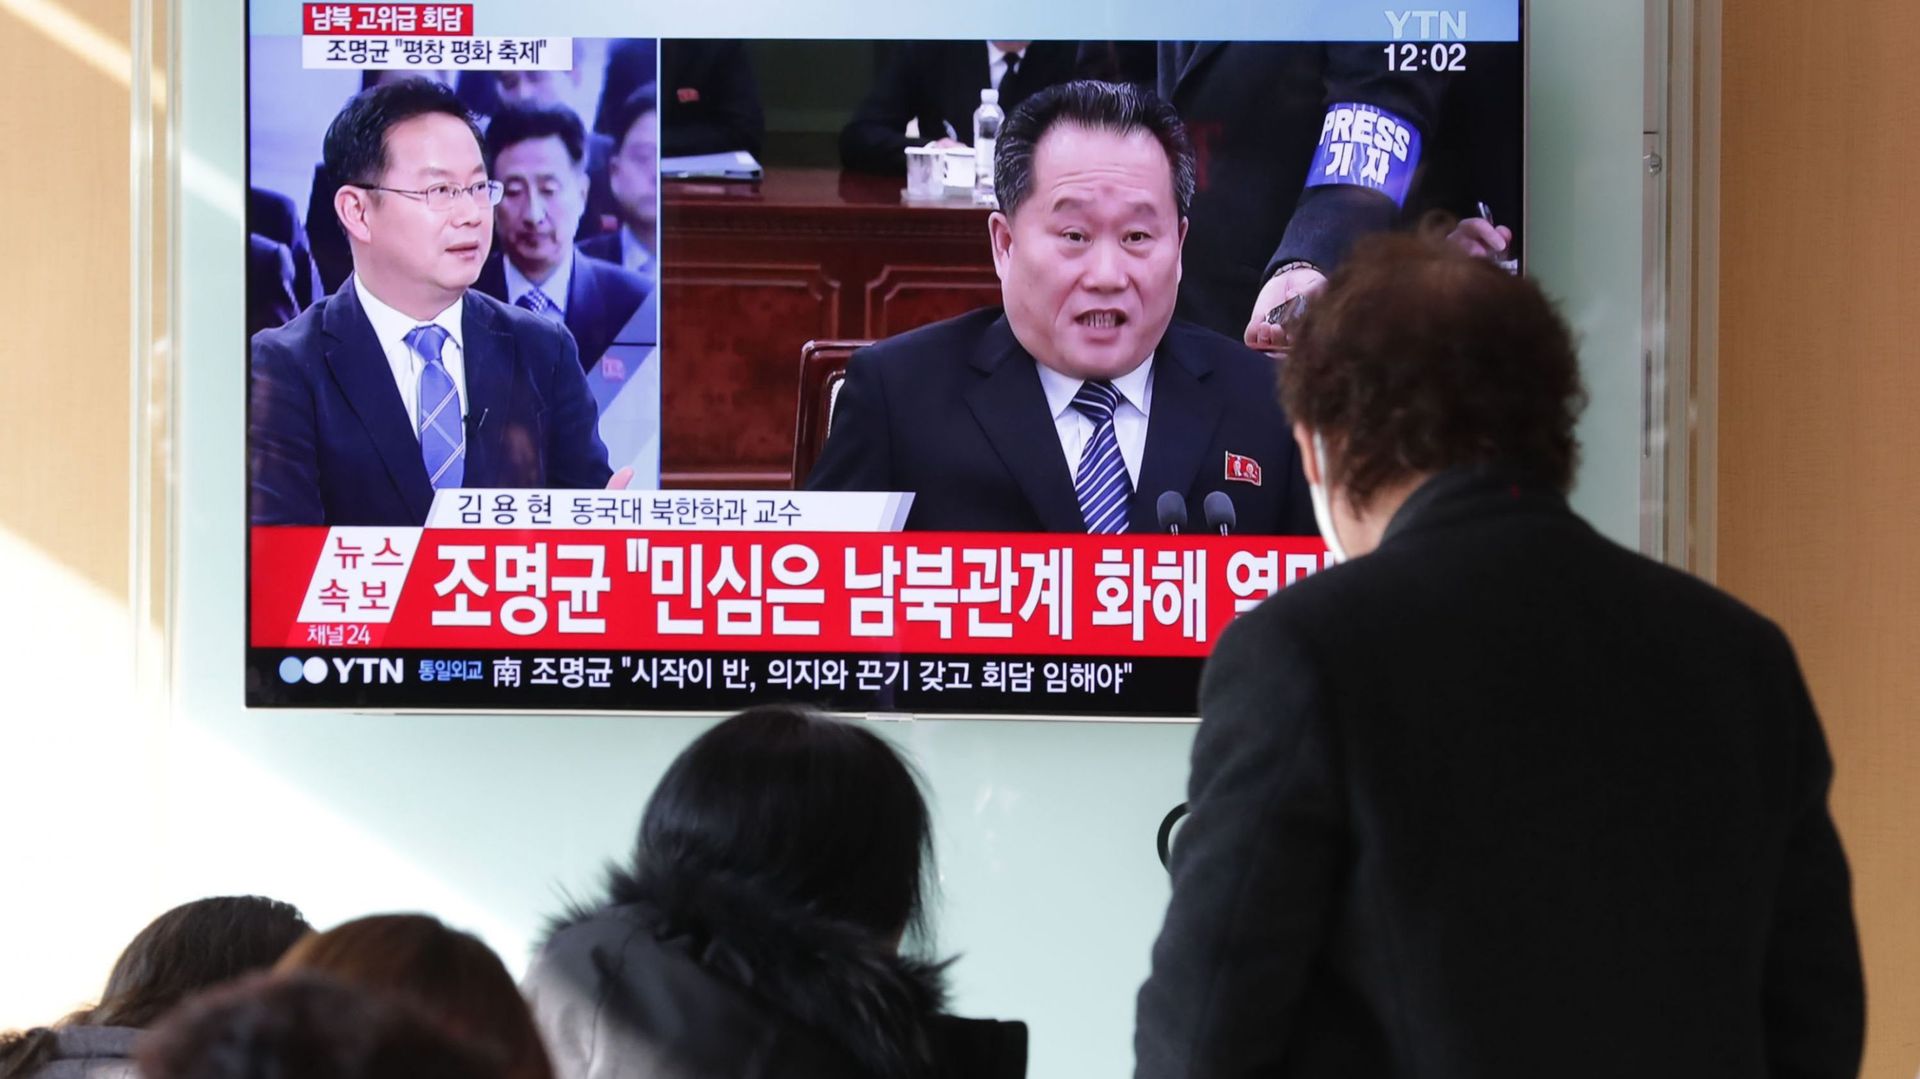 Une rencontre entre Corée du Nord et Corée du Sud s'est tenue dans la nuit de lundi à mardi. Un moment important dans le conflit entre les deux pays.